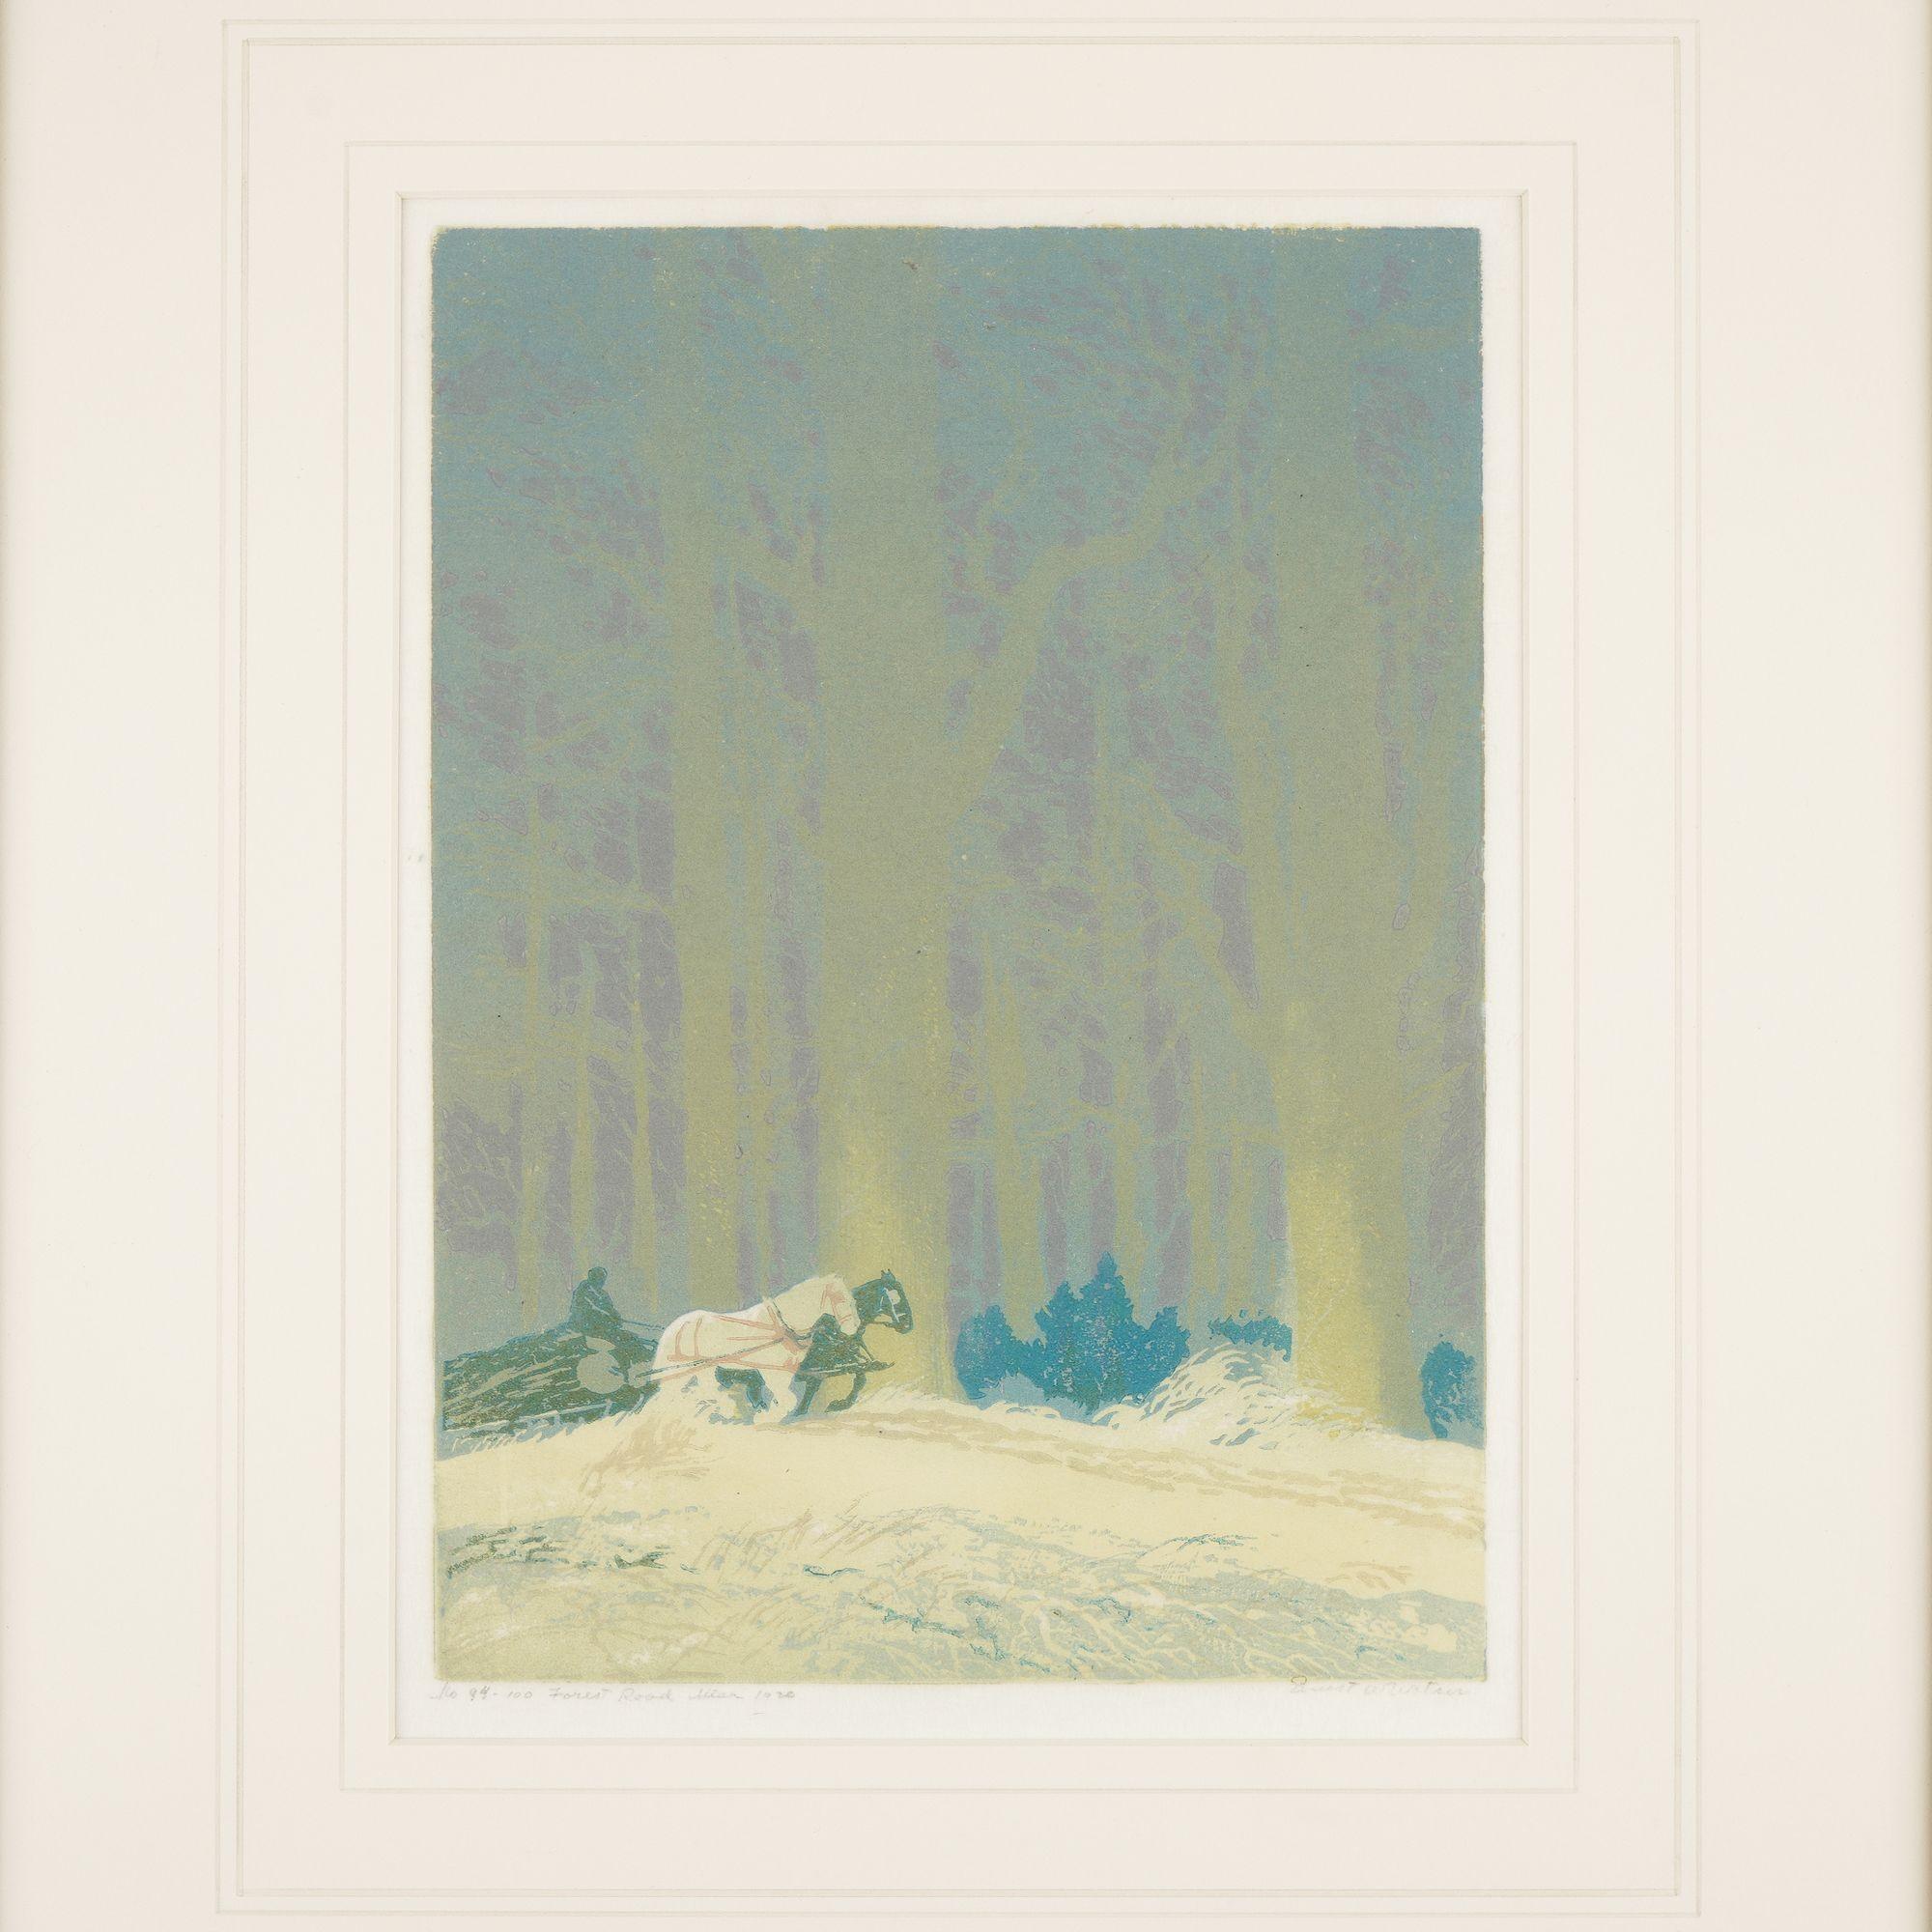 Linolschnitt auf Papier eines Waldes auf einem von Pferden gepflügten Feld. Der helle, cremefarbene Vordergrund wird durch einen Wald im Hintergrund kontrastiert, der in sanften Grün-, Lila- und Blautönen gehalten ist. Archiviert unter UV-Glas in